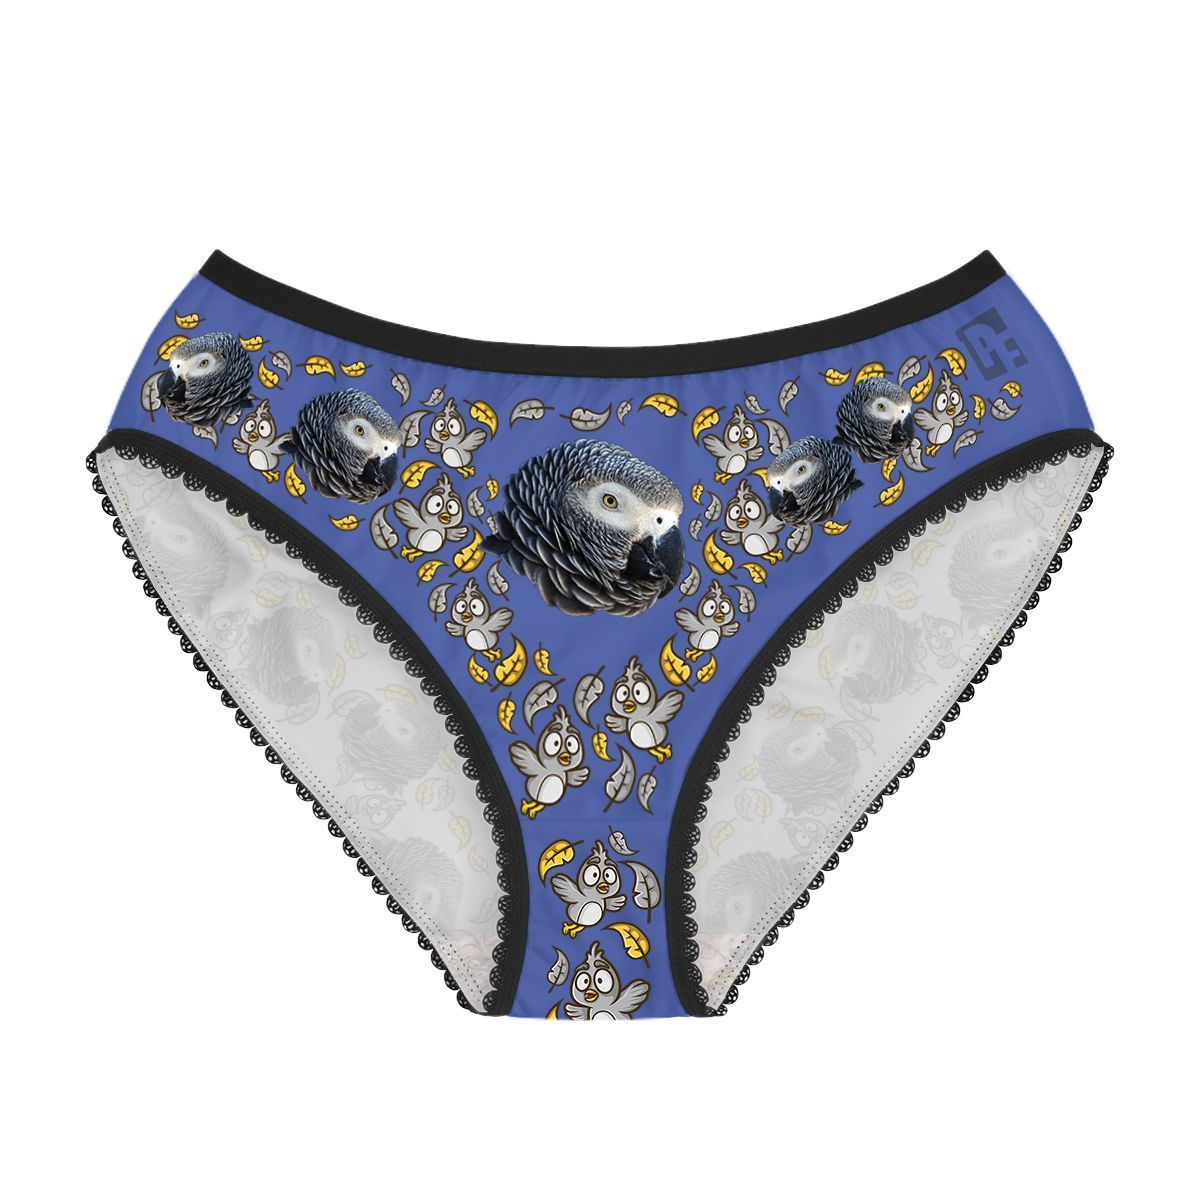 Darkblue Bird women's underwear briefs personalized with photo printed on them